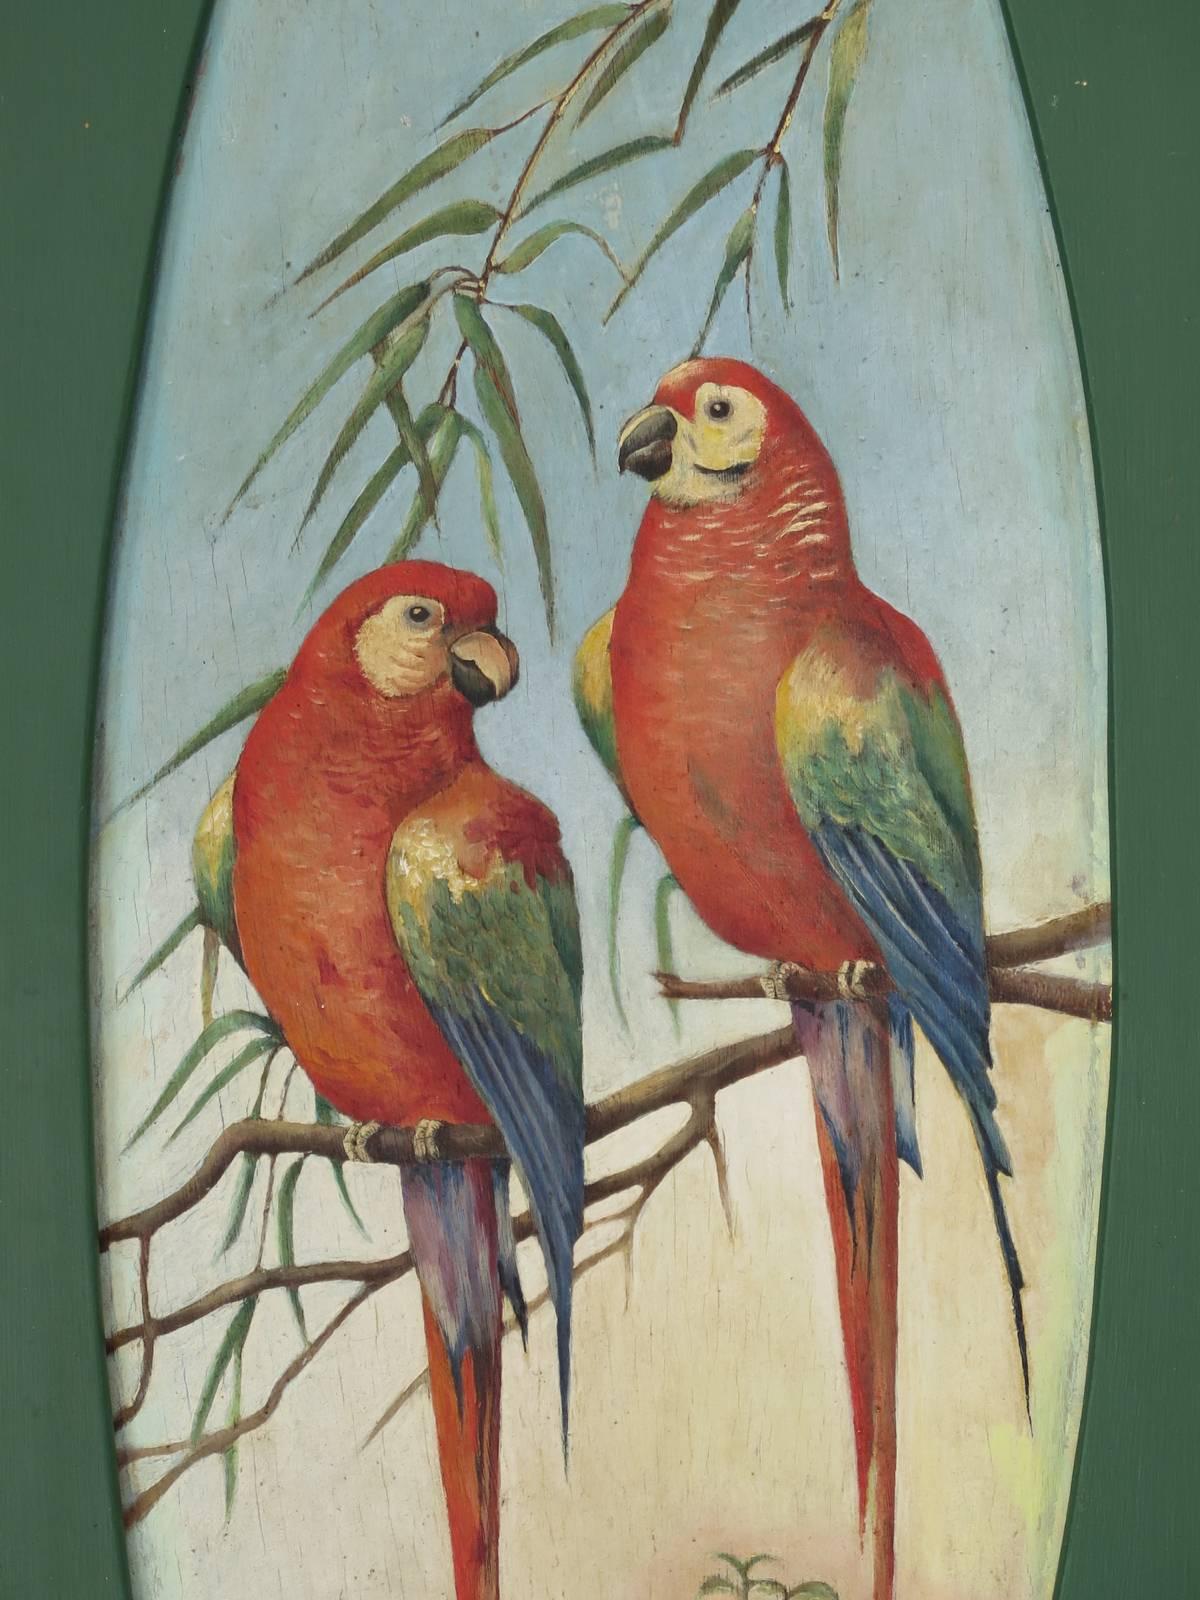 Hübsches Paar Gemälde auf Holzplatten, die jeweils ein buntes Papageienpaar in einem ovalen Medaillon darstellen.